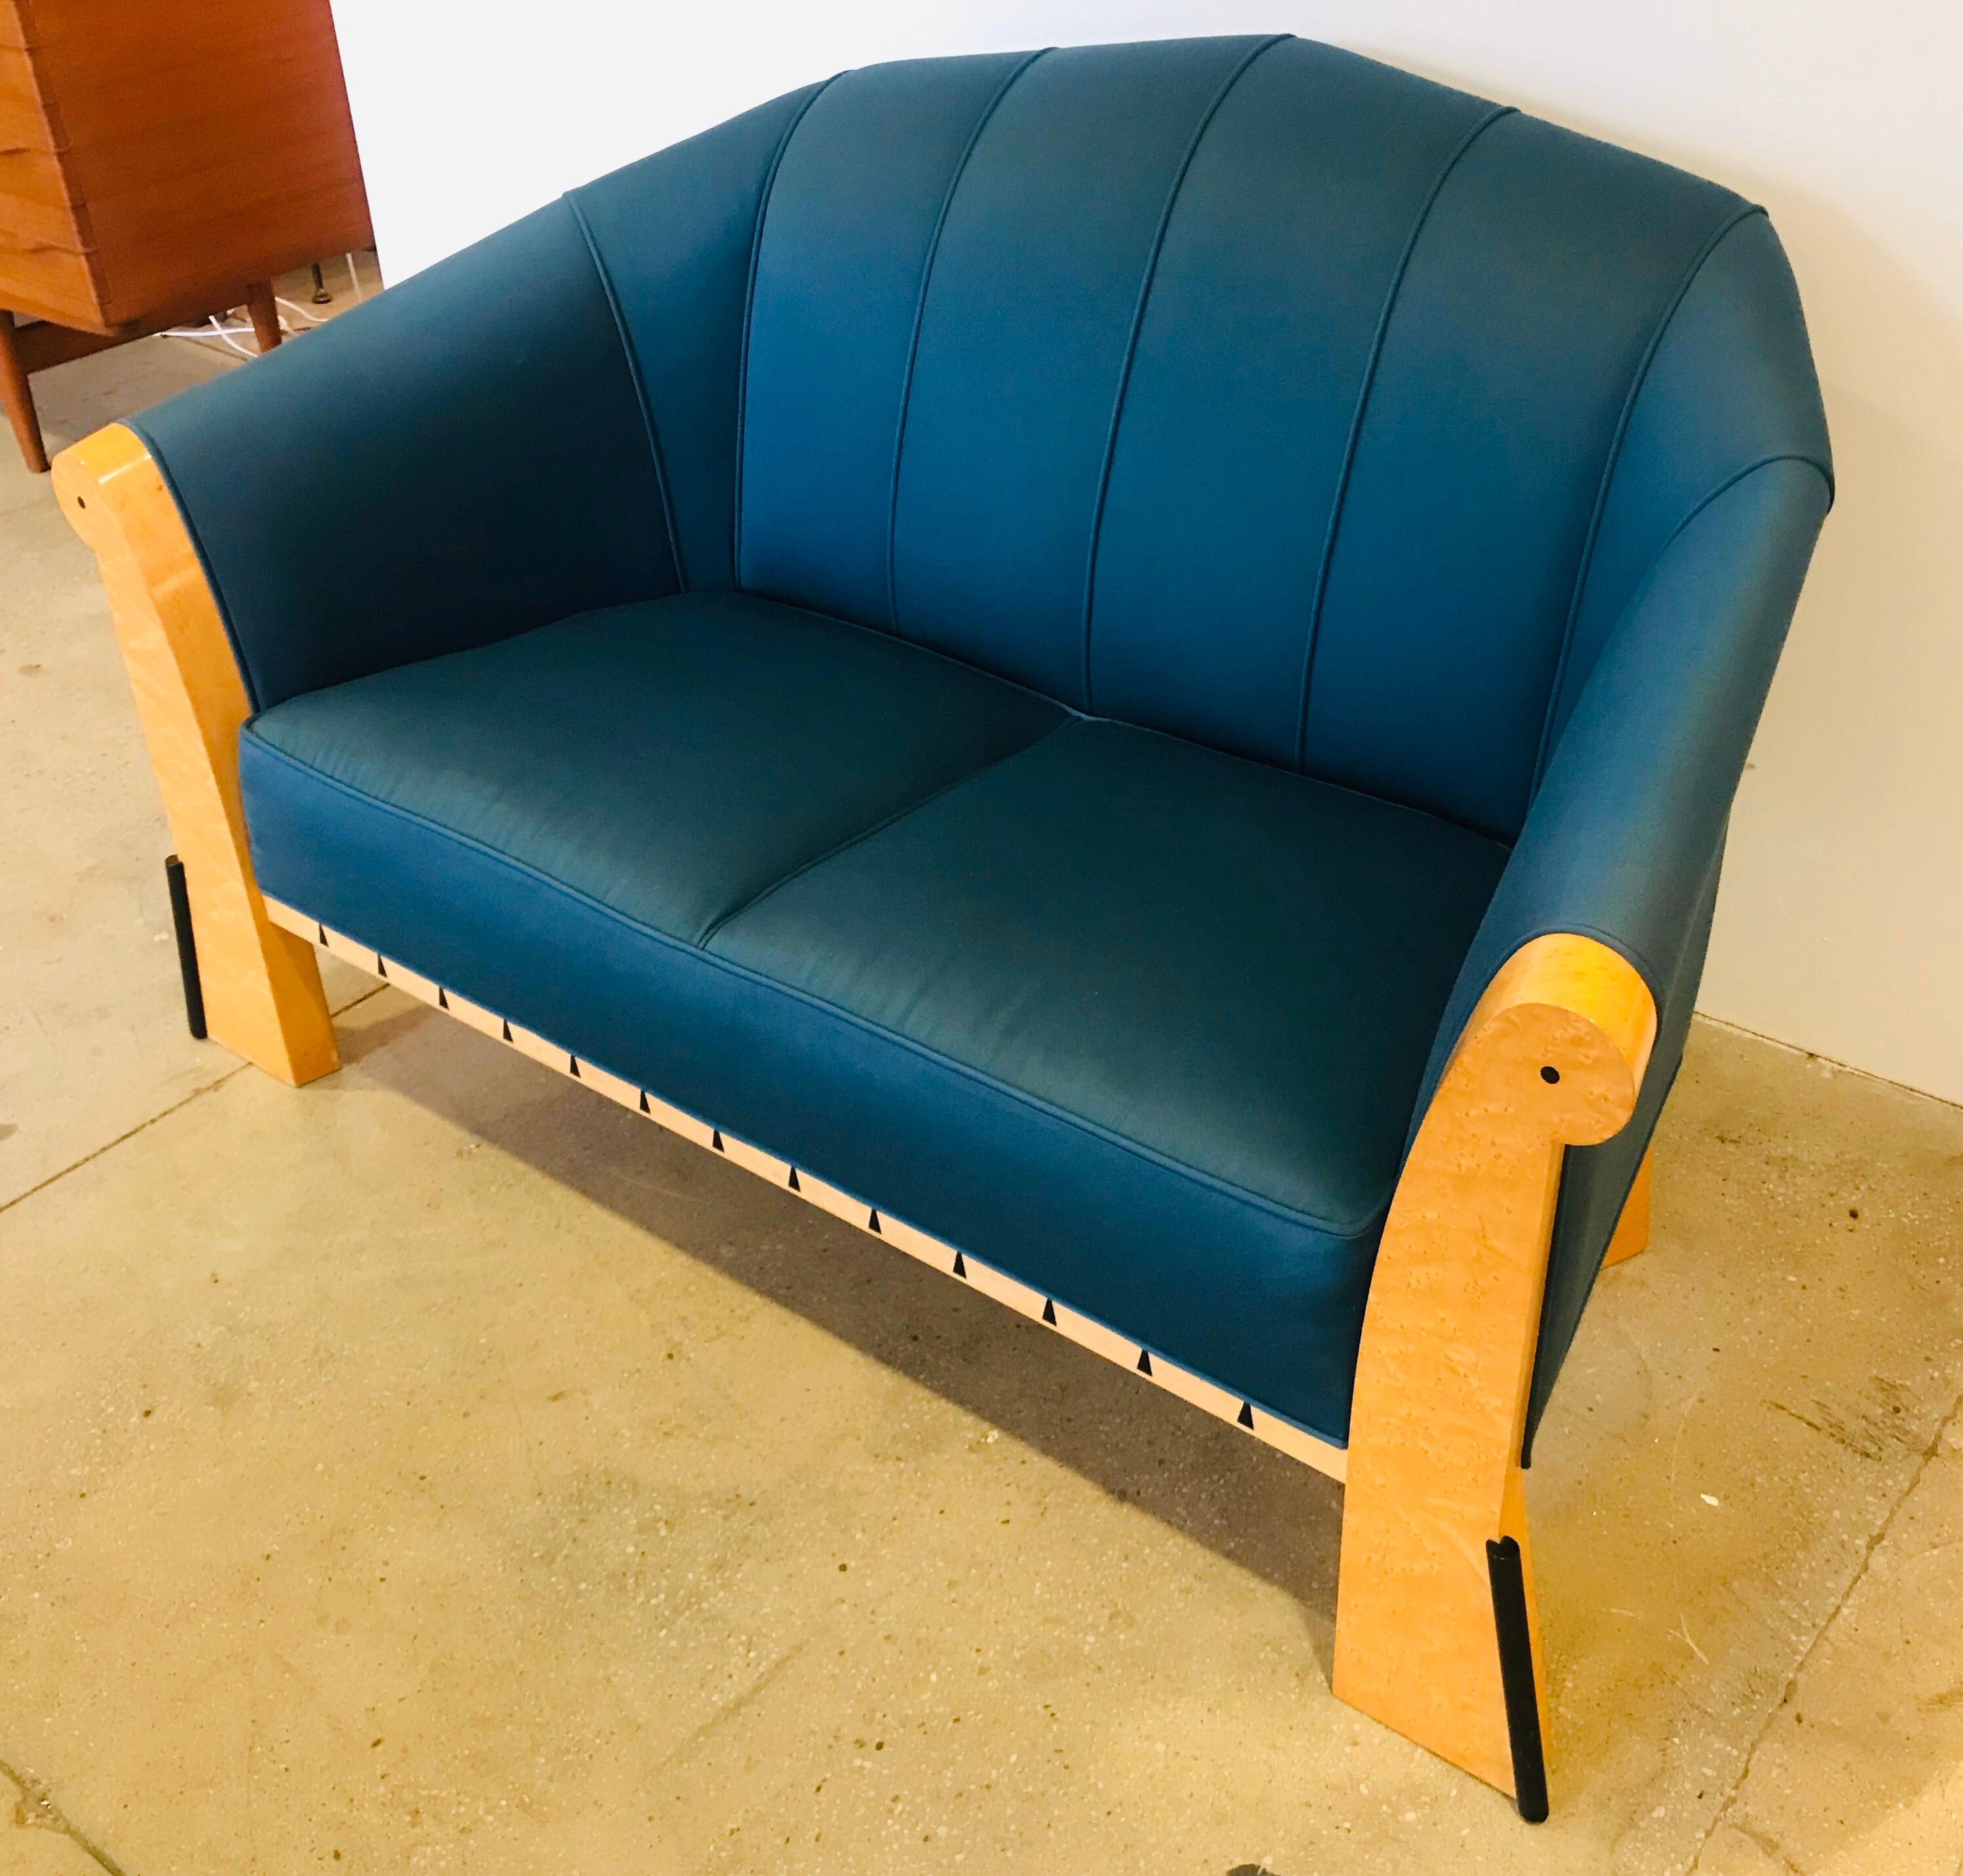 Ein kultiges und seltenes Sofa aus den 1980er Jahren des amerikanischen Designers Michael Graves. Facettierte, leuchtend pfauenblaue, gepolsterte Rückenlehne mit Ebenholzintarsien im Vogelaugenahornrahmen.

Michael Graves (geboren 1934) war ein